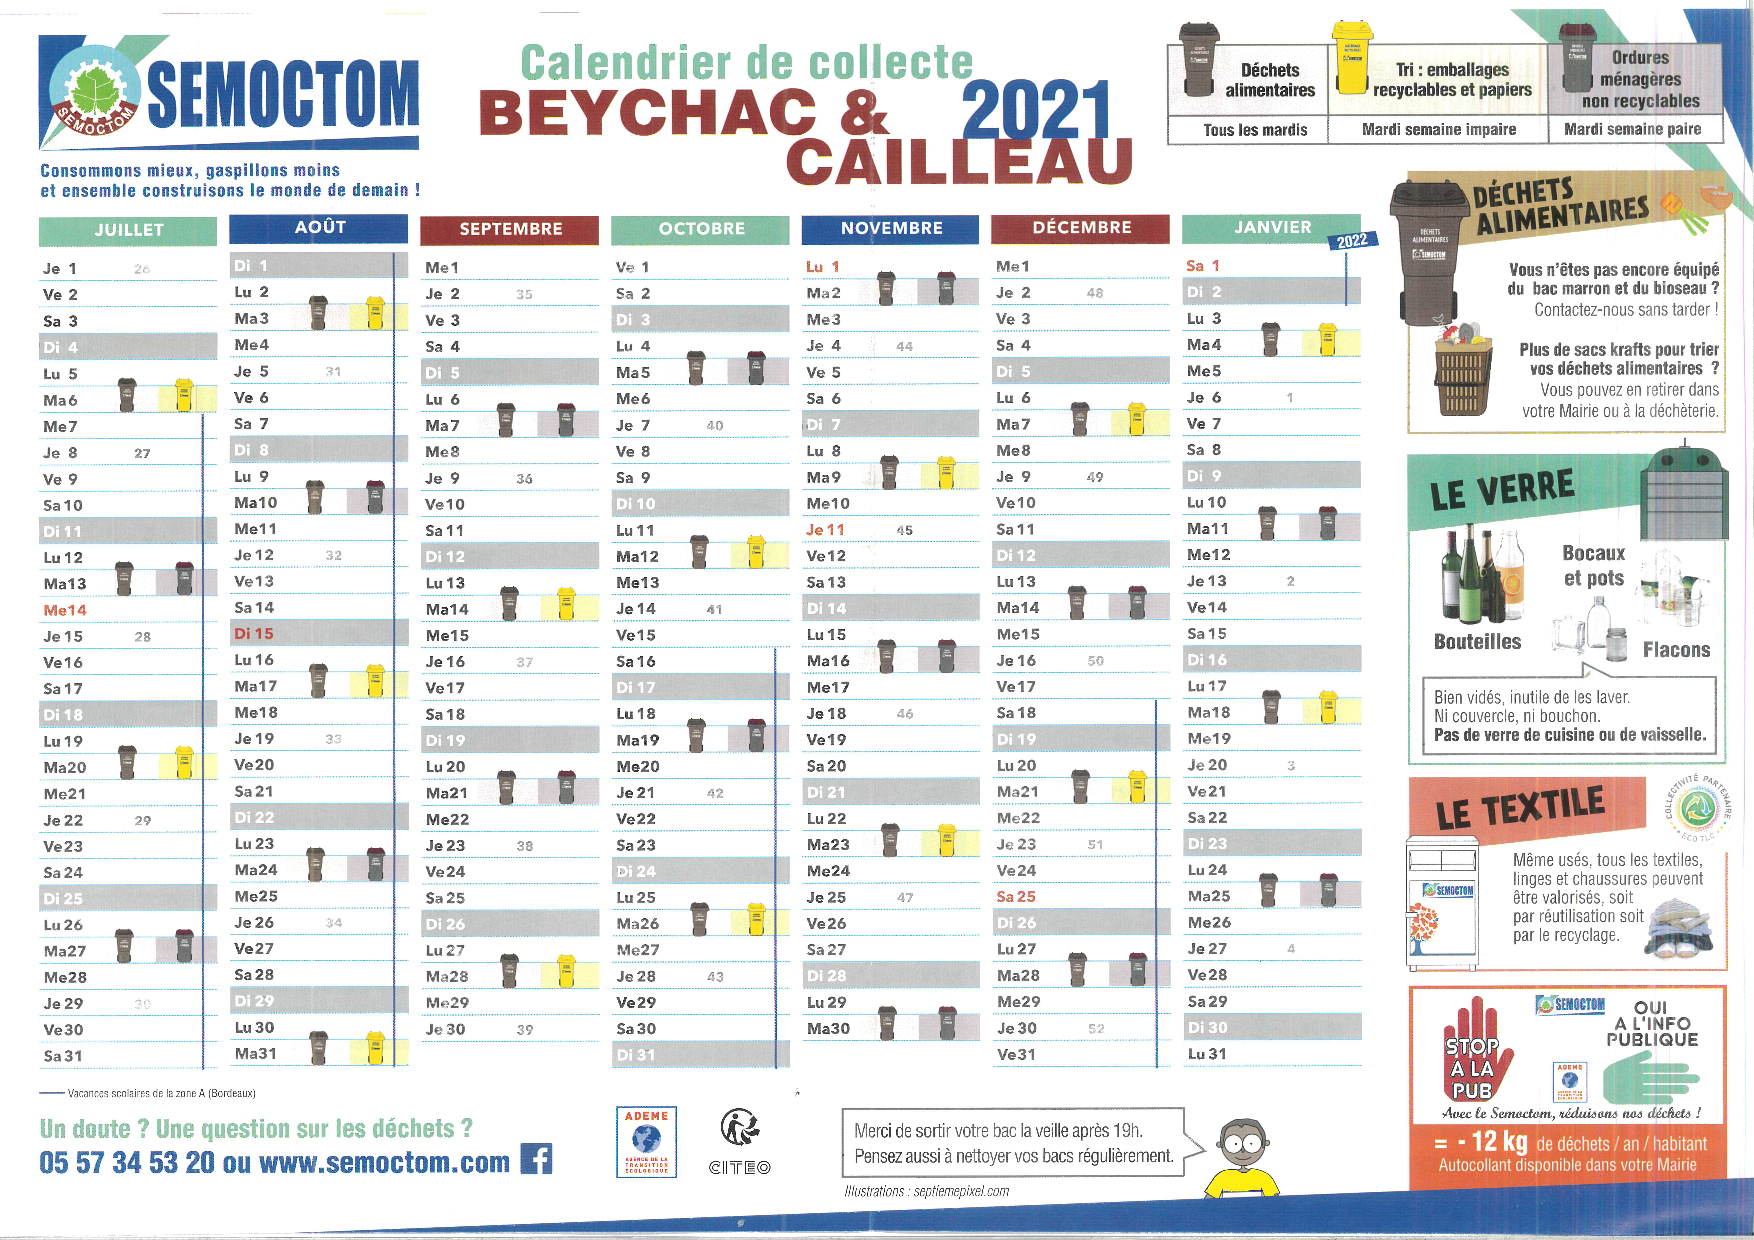 Calendrier Smicval 2022 Collecte des ordures ménagères et tri sélectif – Beychac & Cailleau